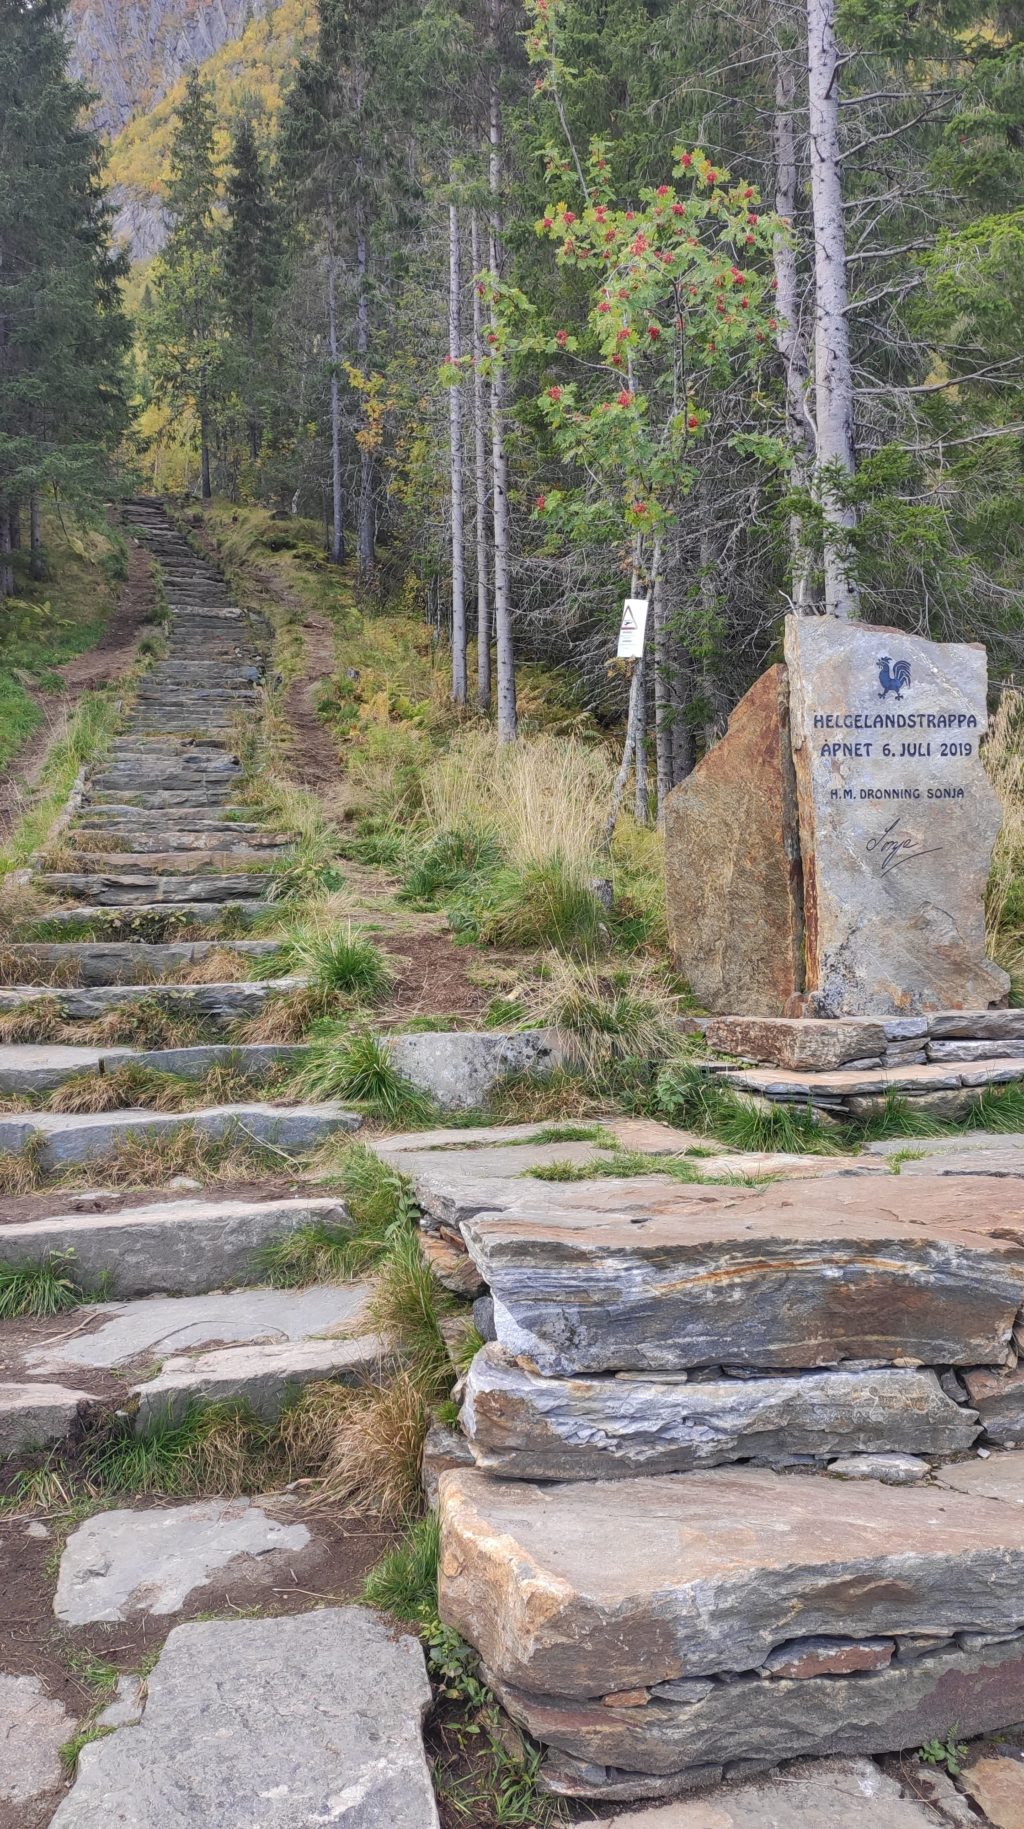 Beginn der Helgelandstrappa, der bald längsten Steintreppe in Norwegen